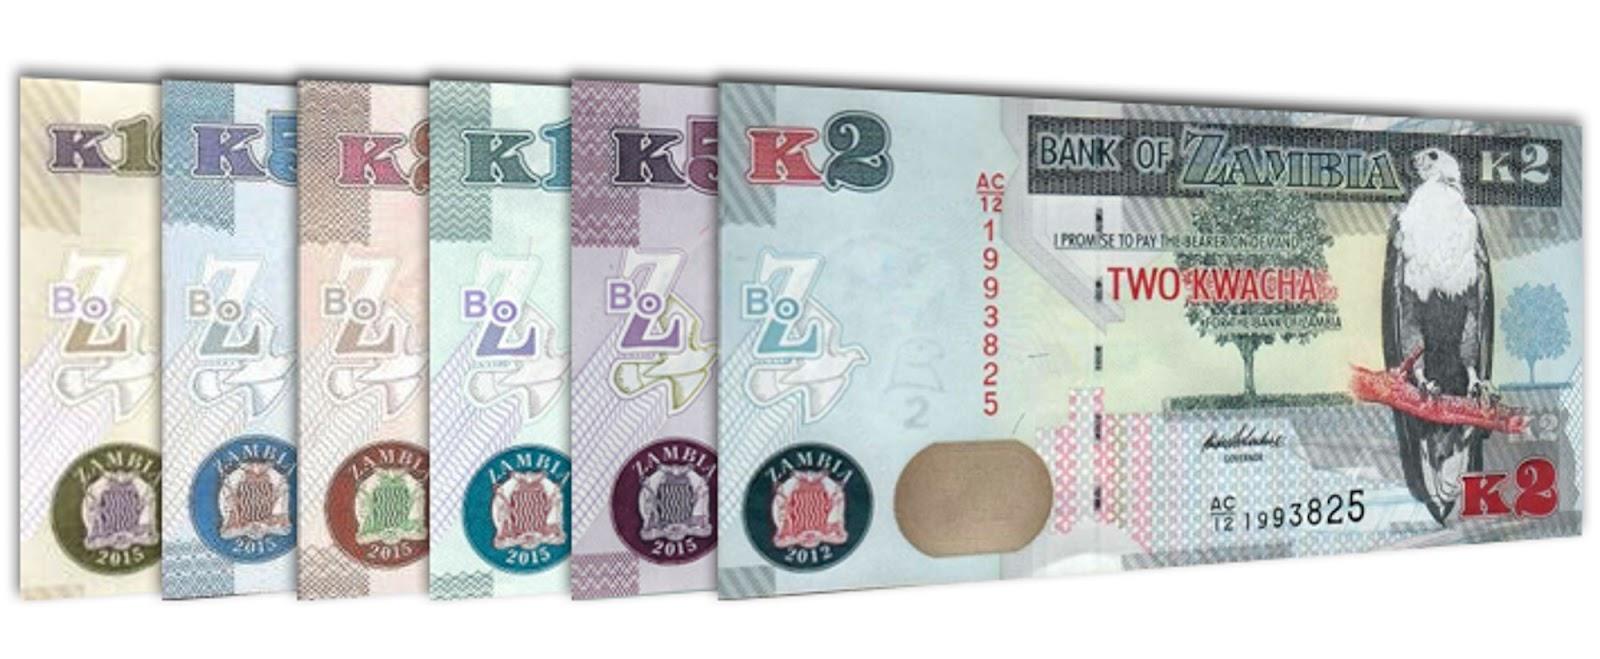 Current Zambian Kwacha banknotes